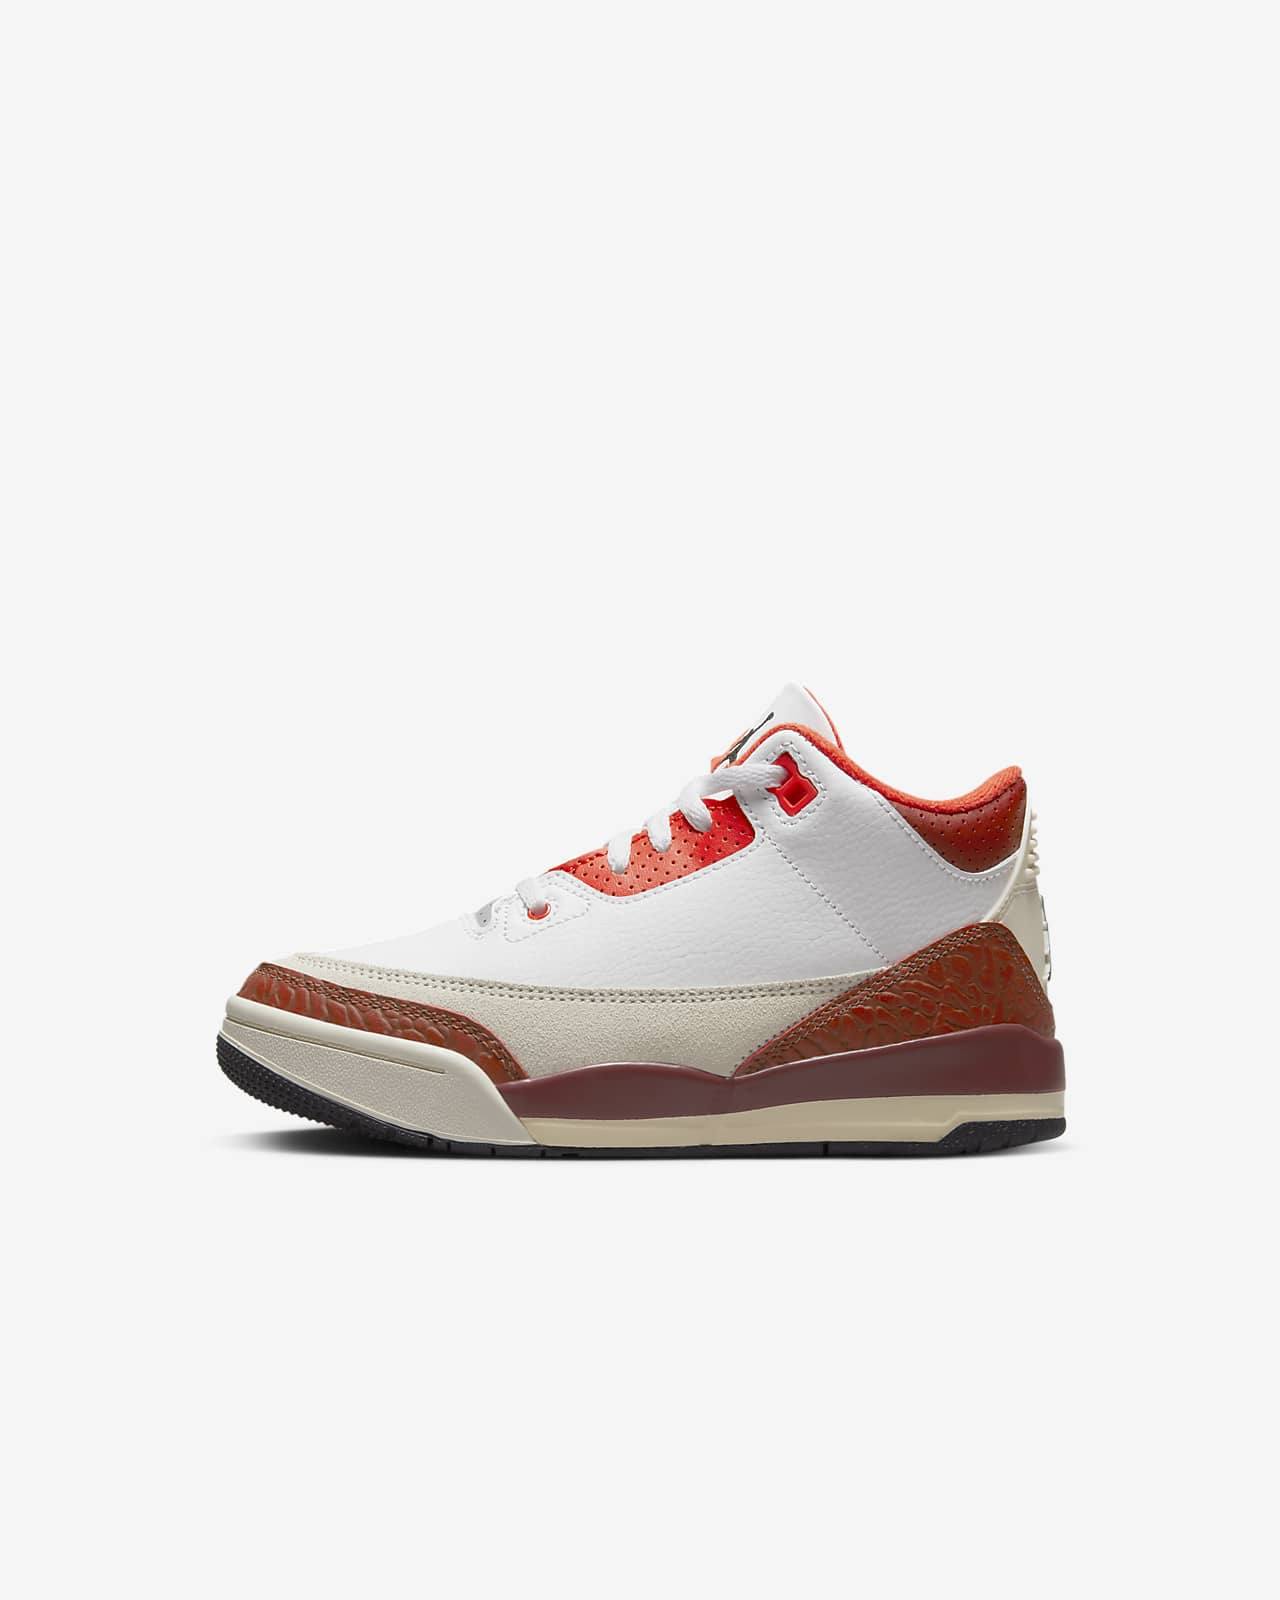 Jordan 3 SE Little Kids' Shoes. Nike.com